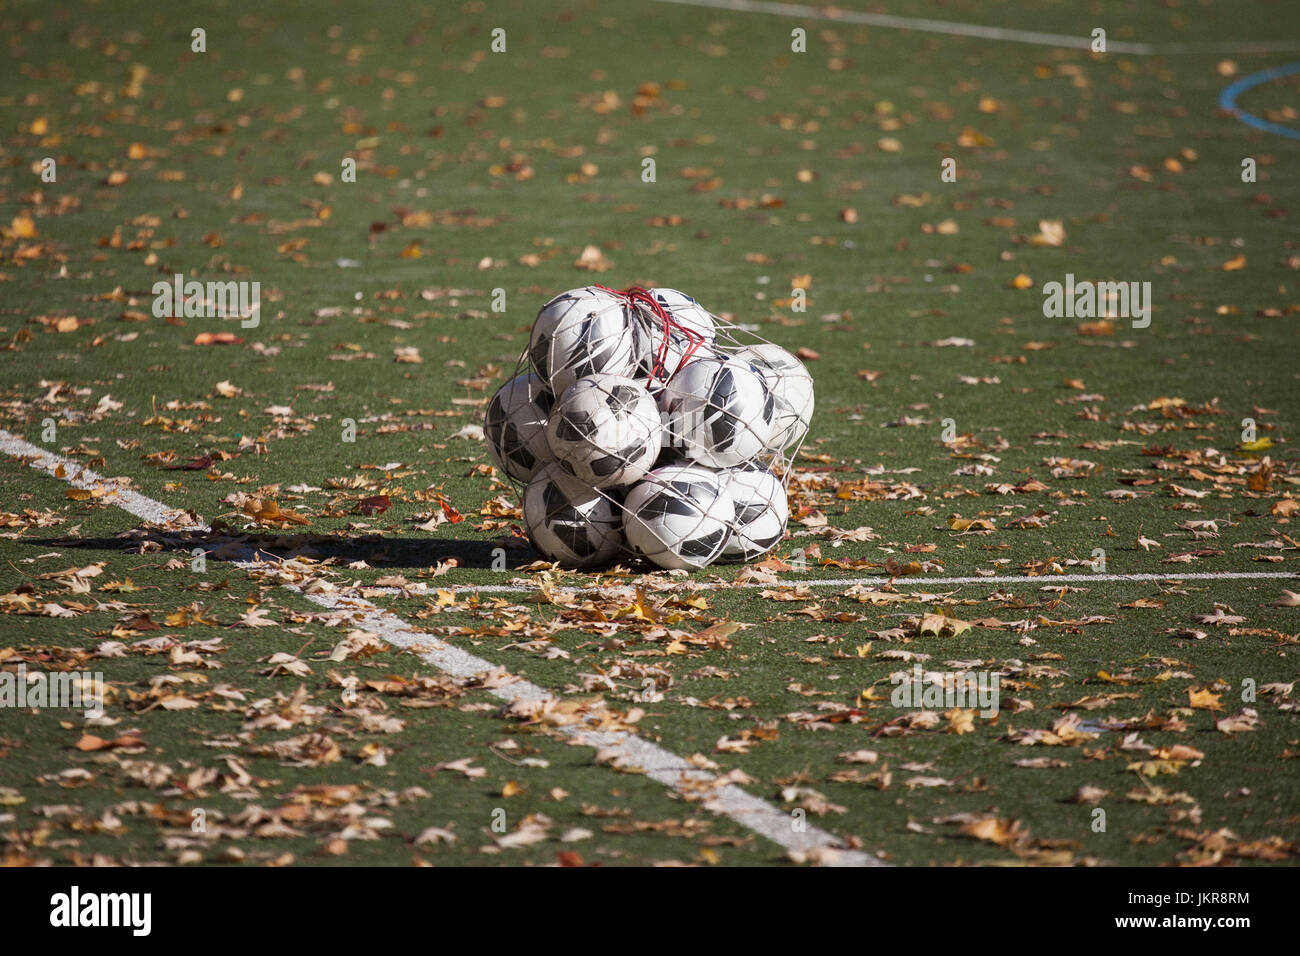 Palloni da calcio in pezza in mezzo caduto foglie secche sul campo da gioco Foto Stock